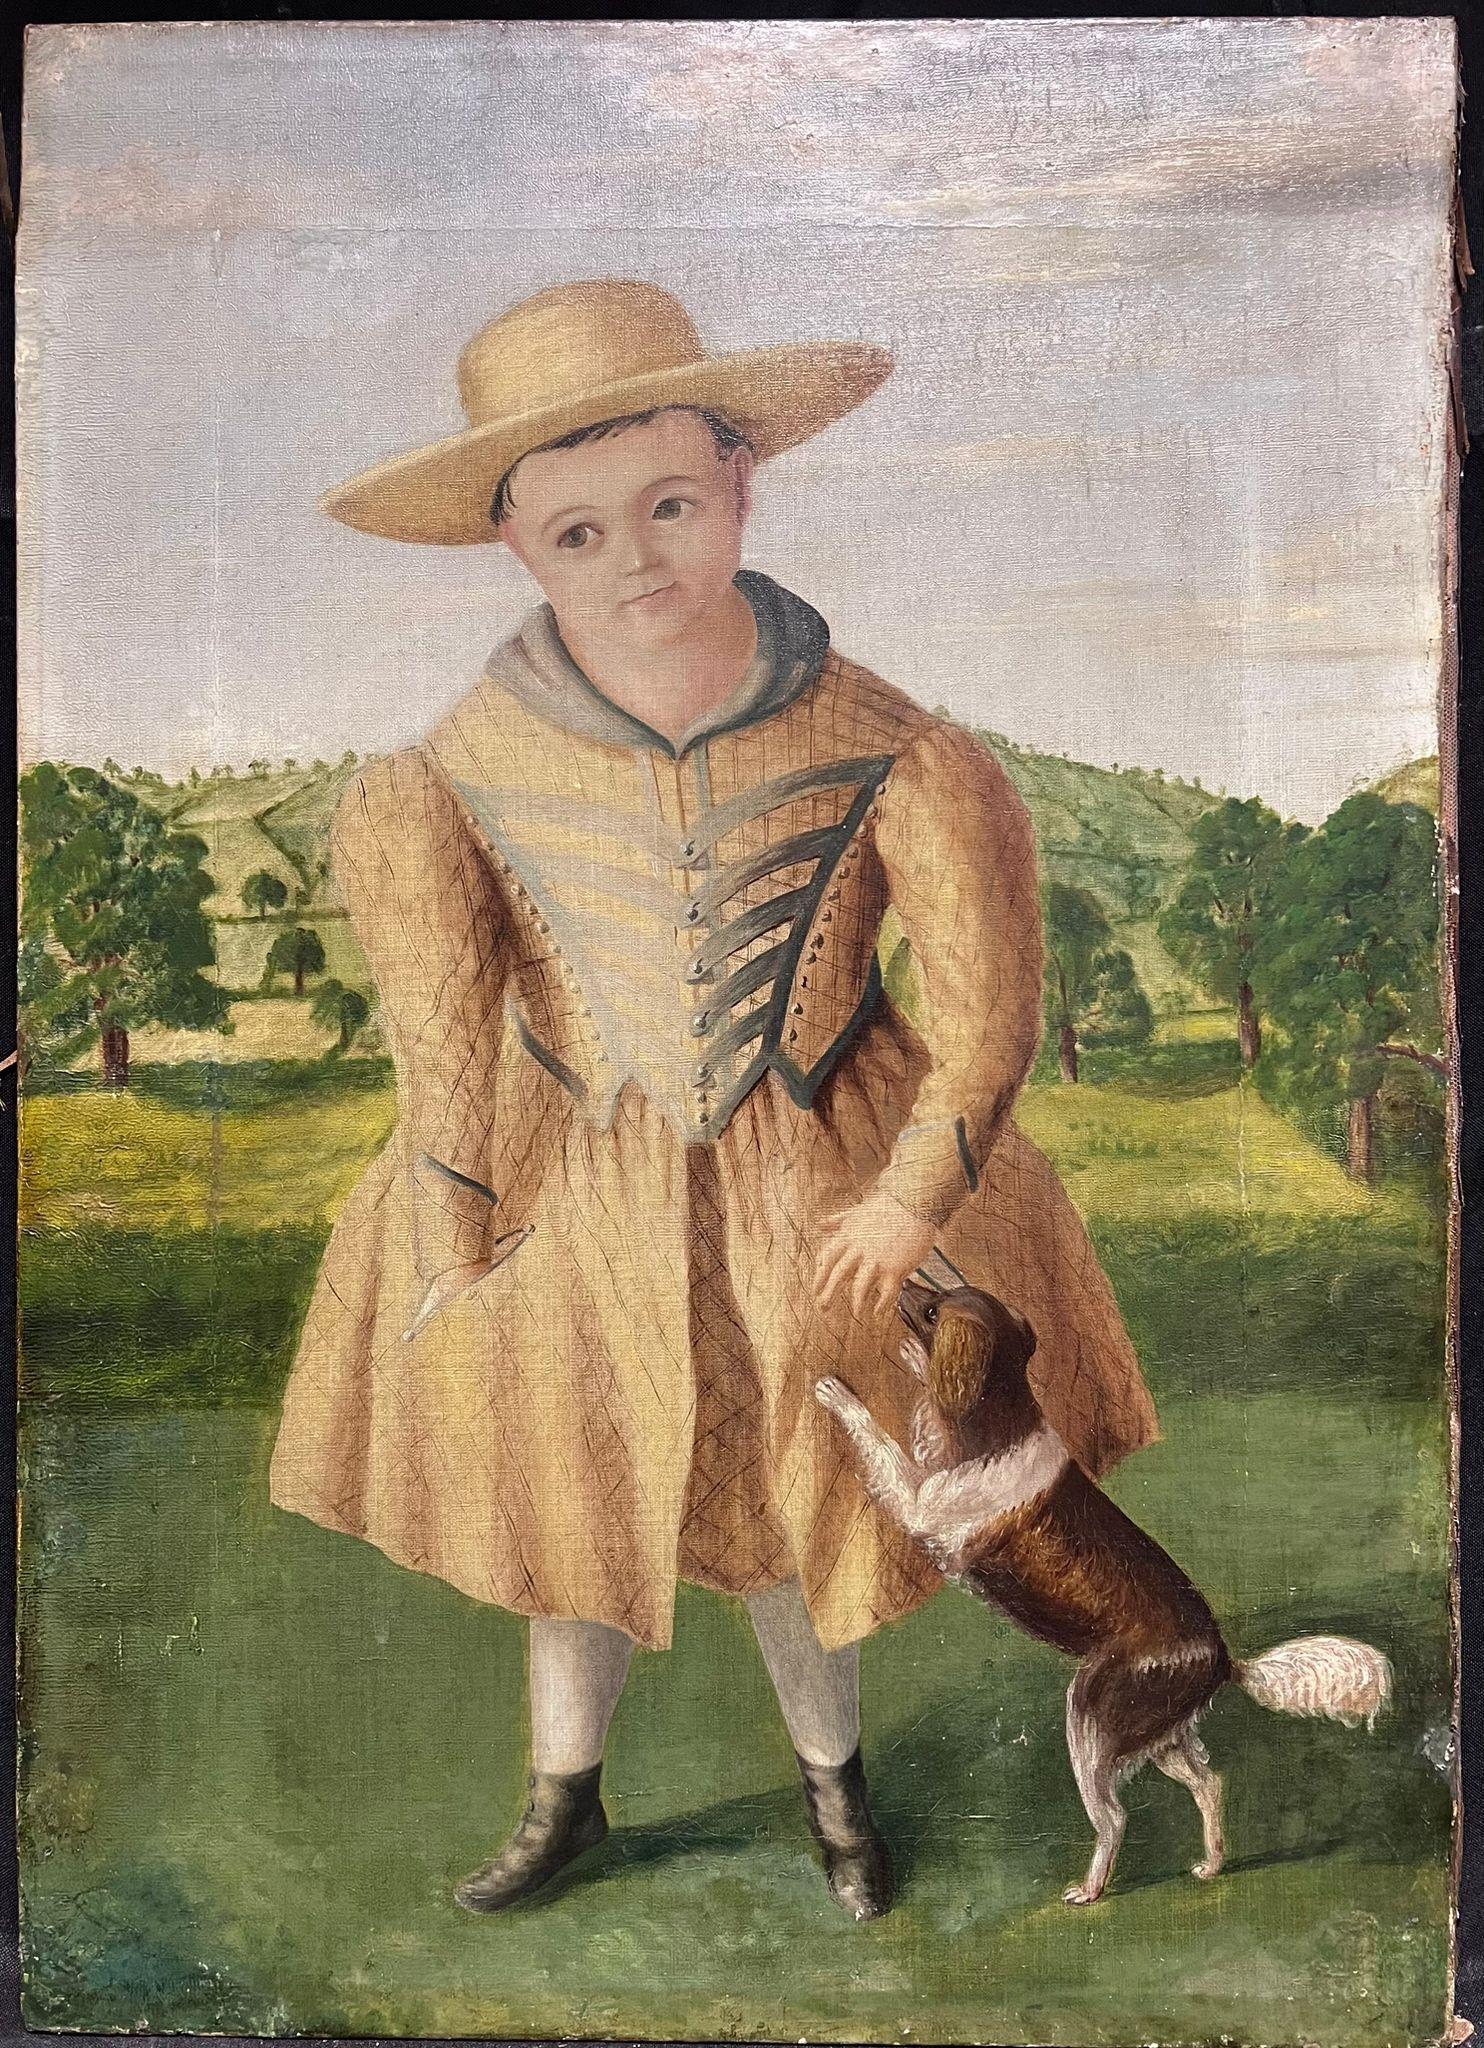 Portrait d'enfant avec chien dans un paysage, huile américaine du milieu du 19e siècle - Painting de 19th century American Folk Art